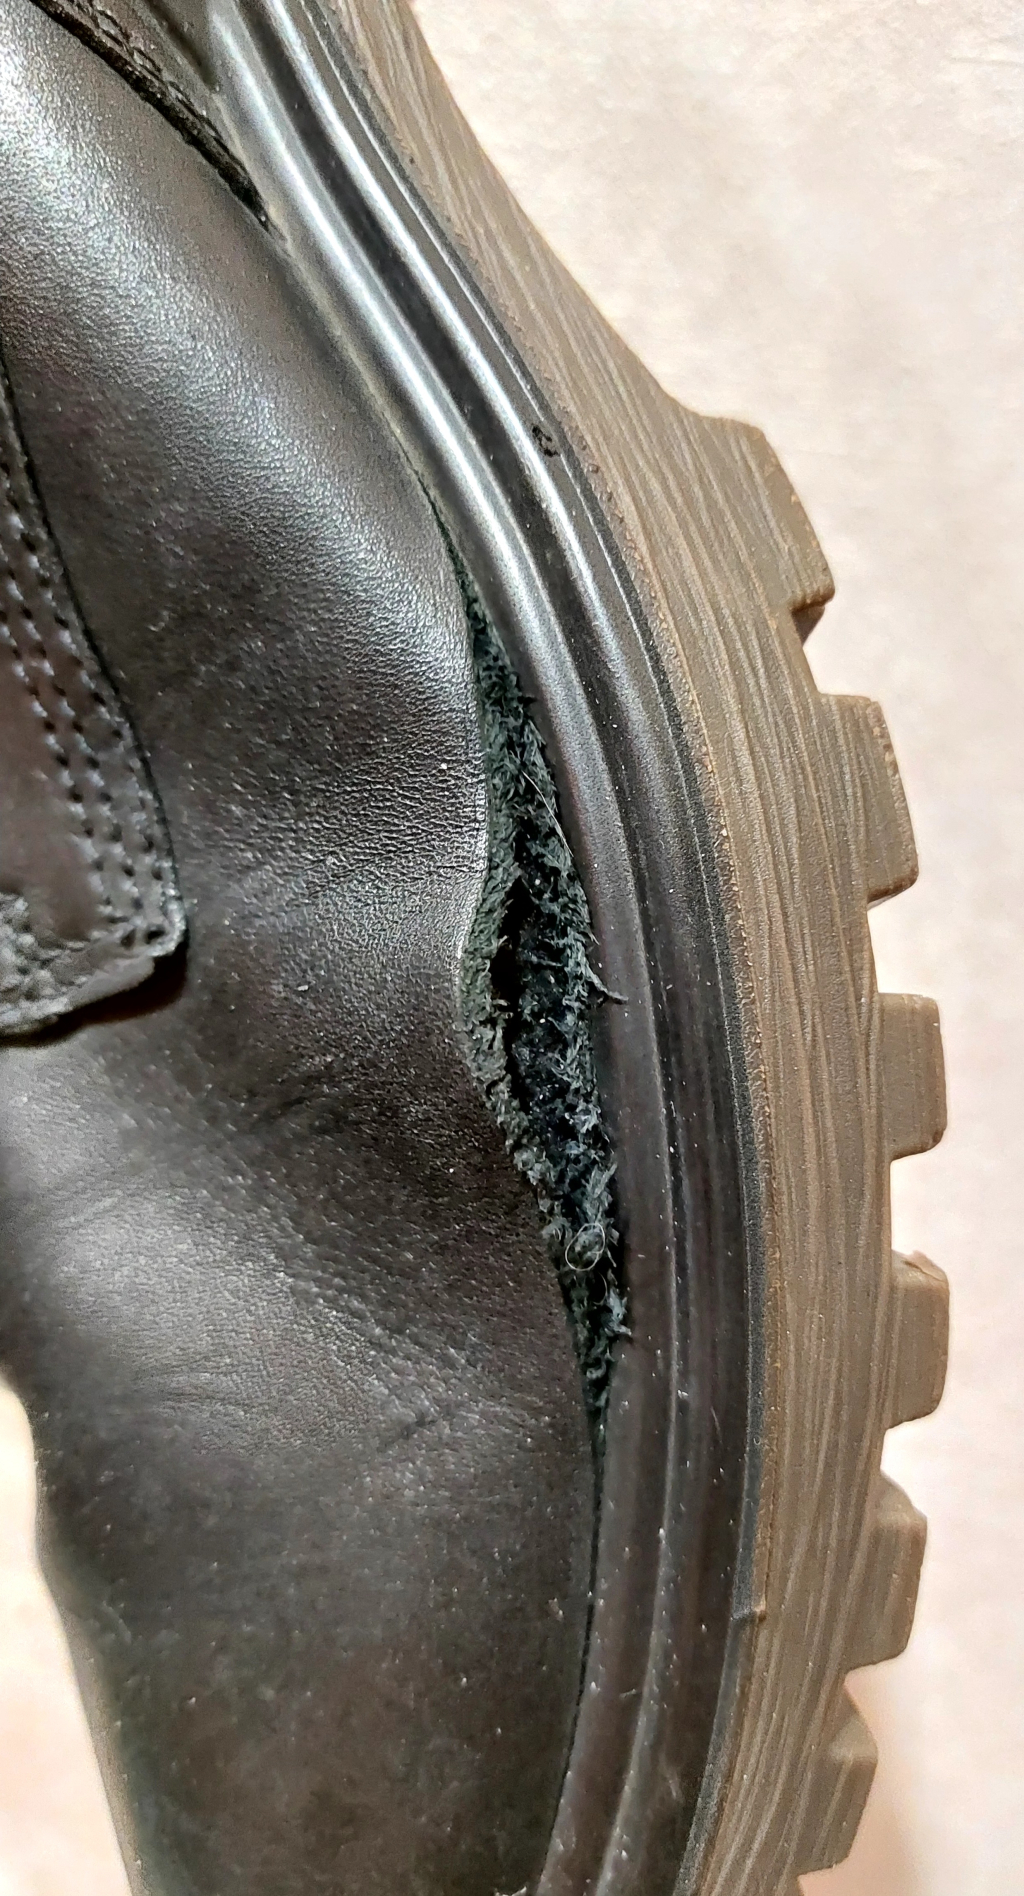 ECCO - Ужасное качество ботинок Grainer M